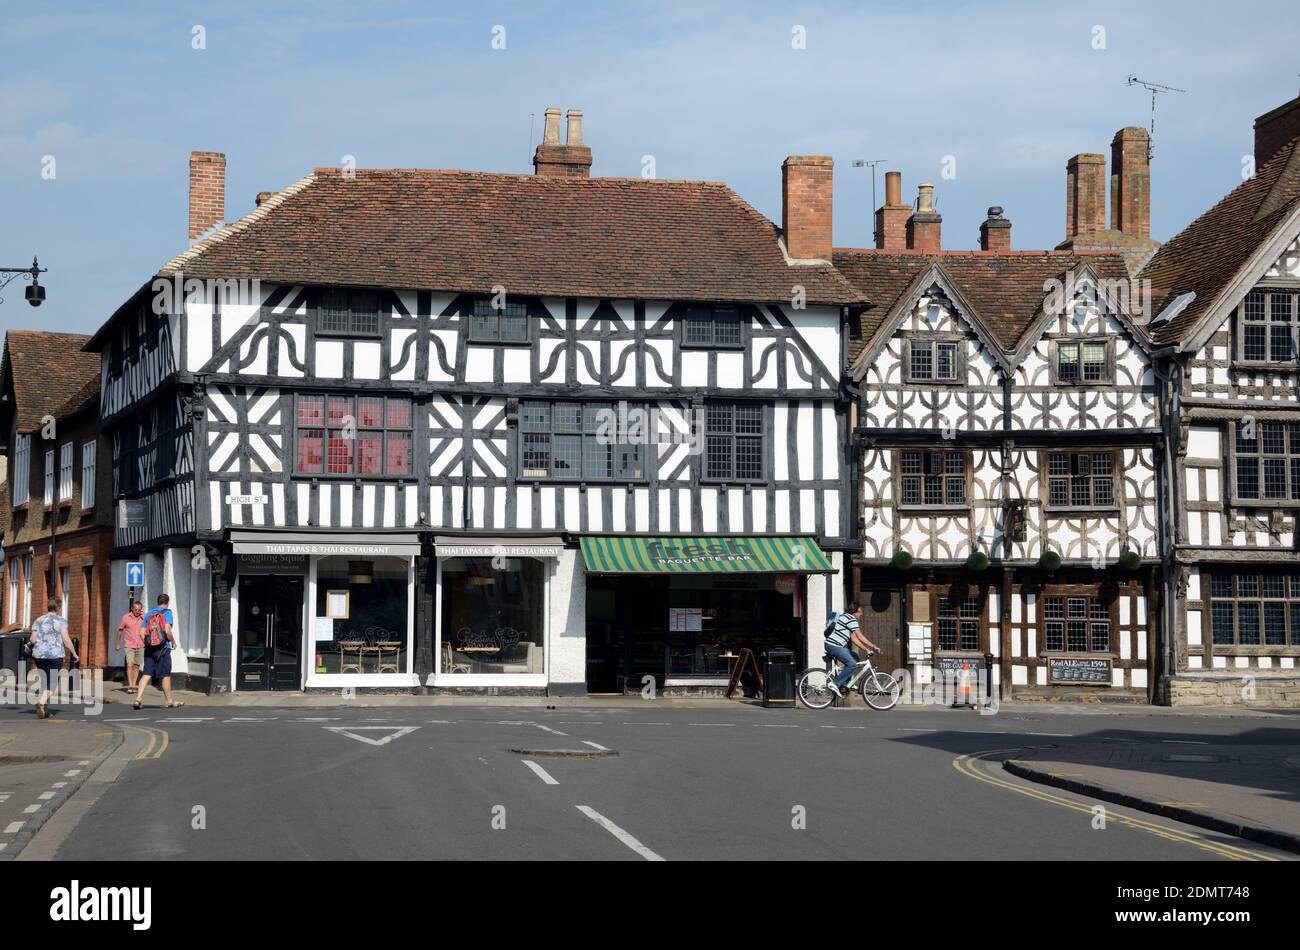 Touristes et architecture traditionnelle, bâtiments médiévaux en demi-bois incluant le Garrick Hotel Stratford-upon-Avon Angleterre Banque D'Images